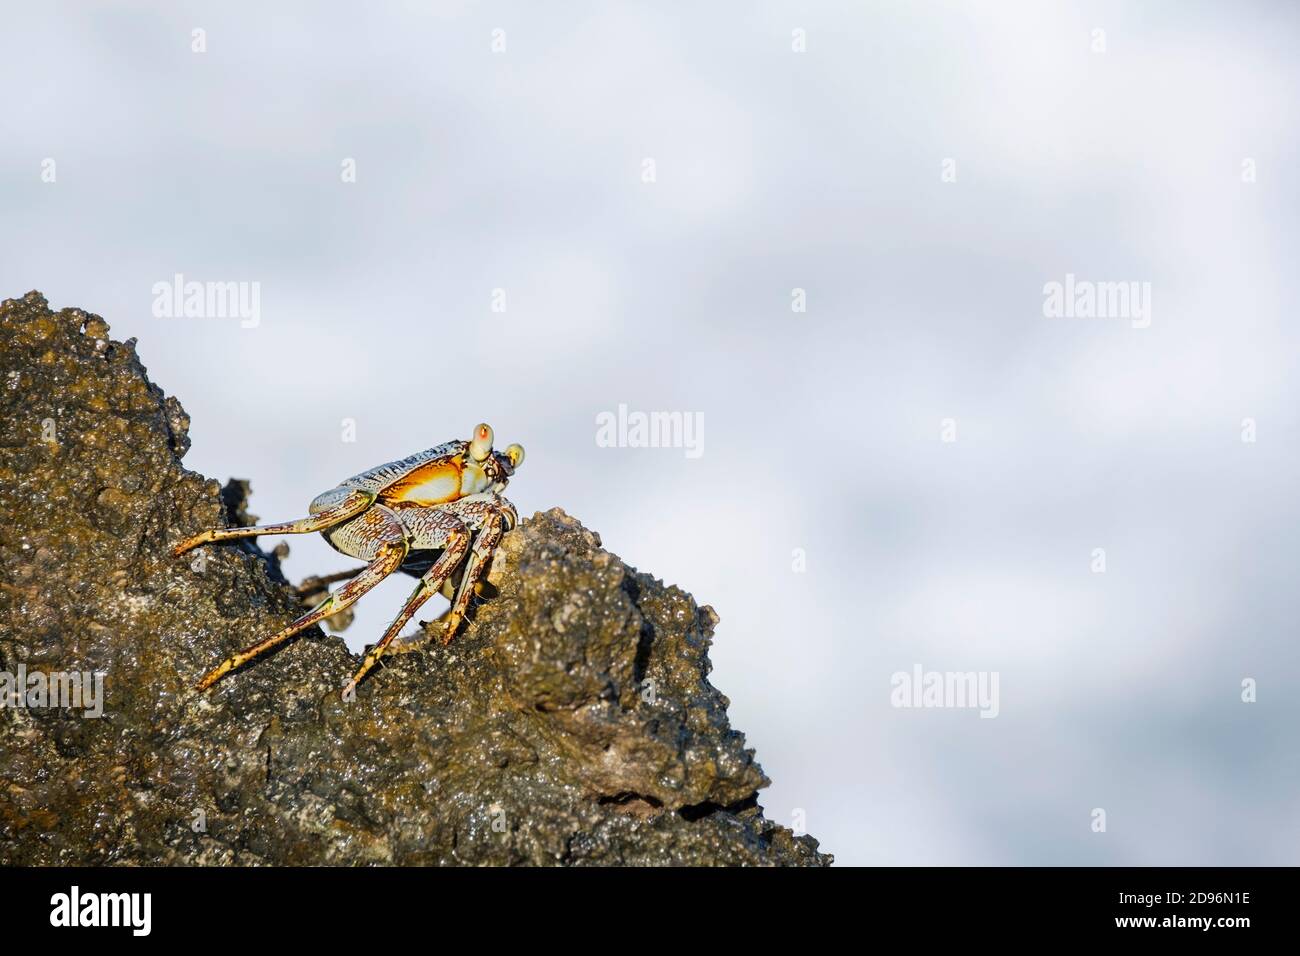 Le crabe des rochers se maintient sur les falaises rocheuses. Zanzibar, Tanzanie, Afrique Banque D'Images